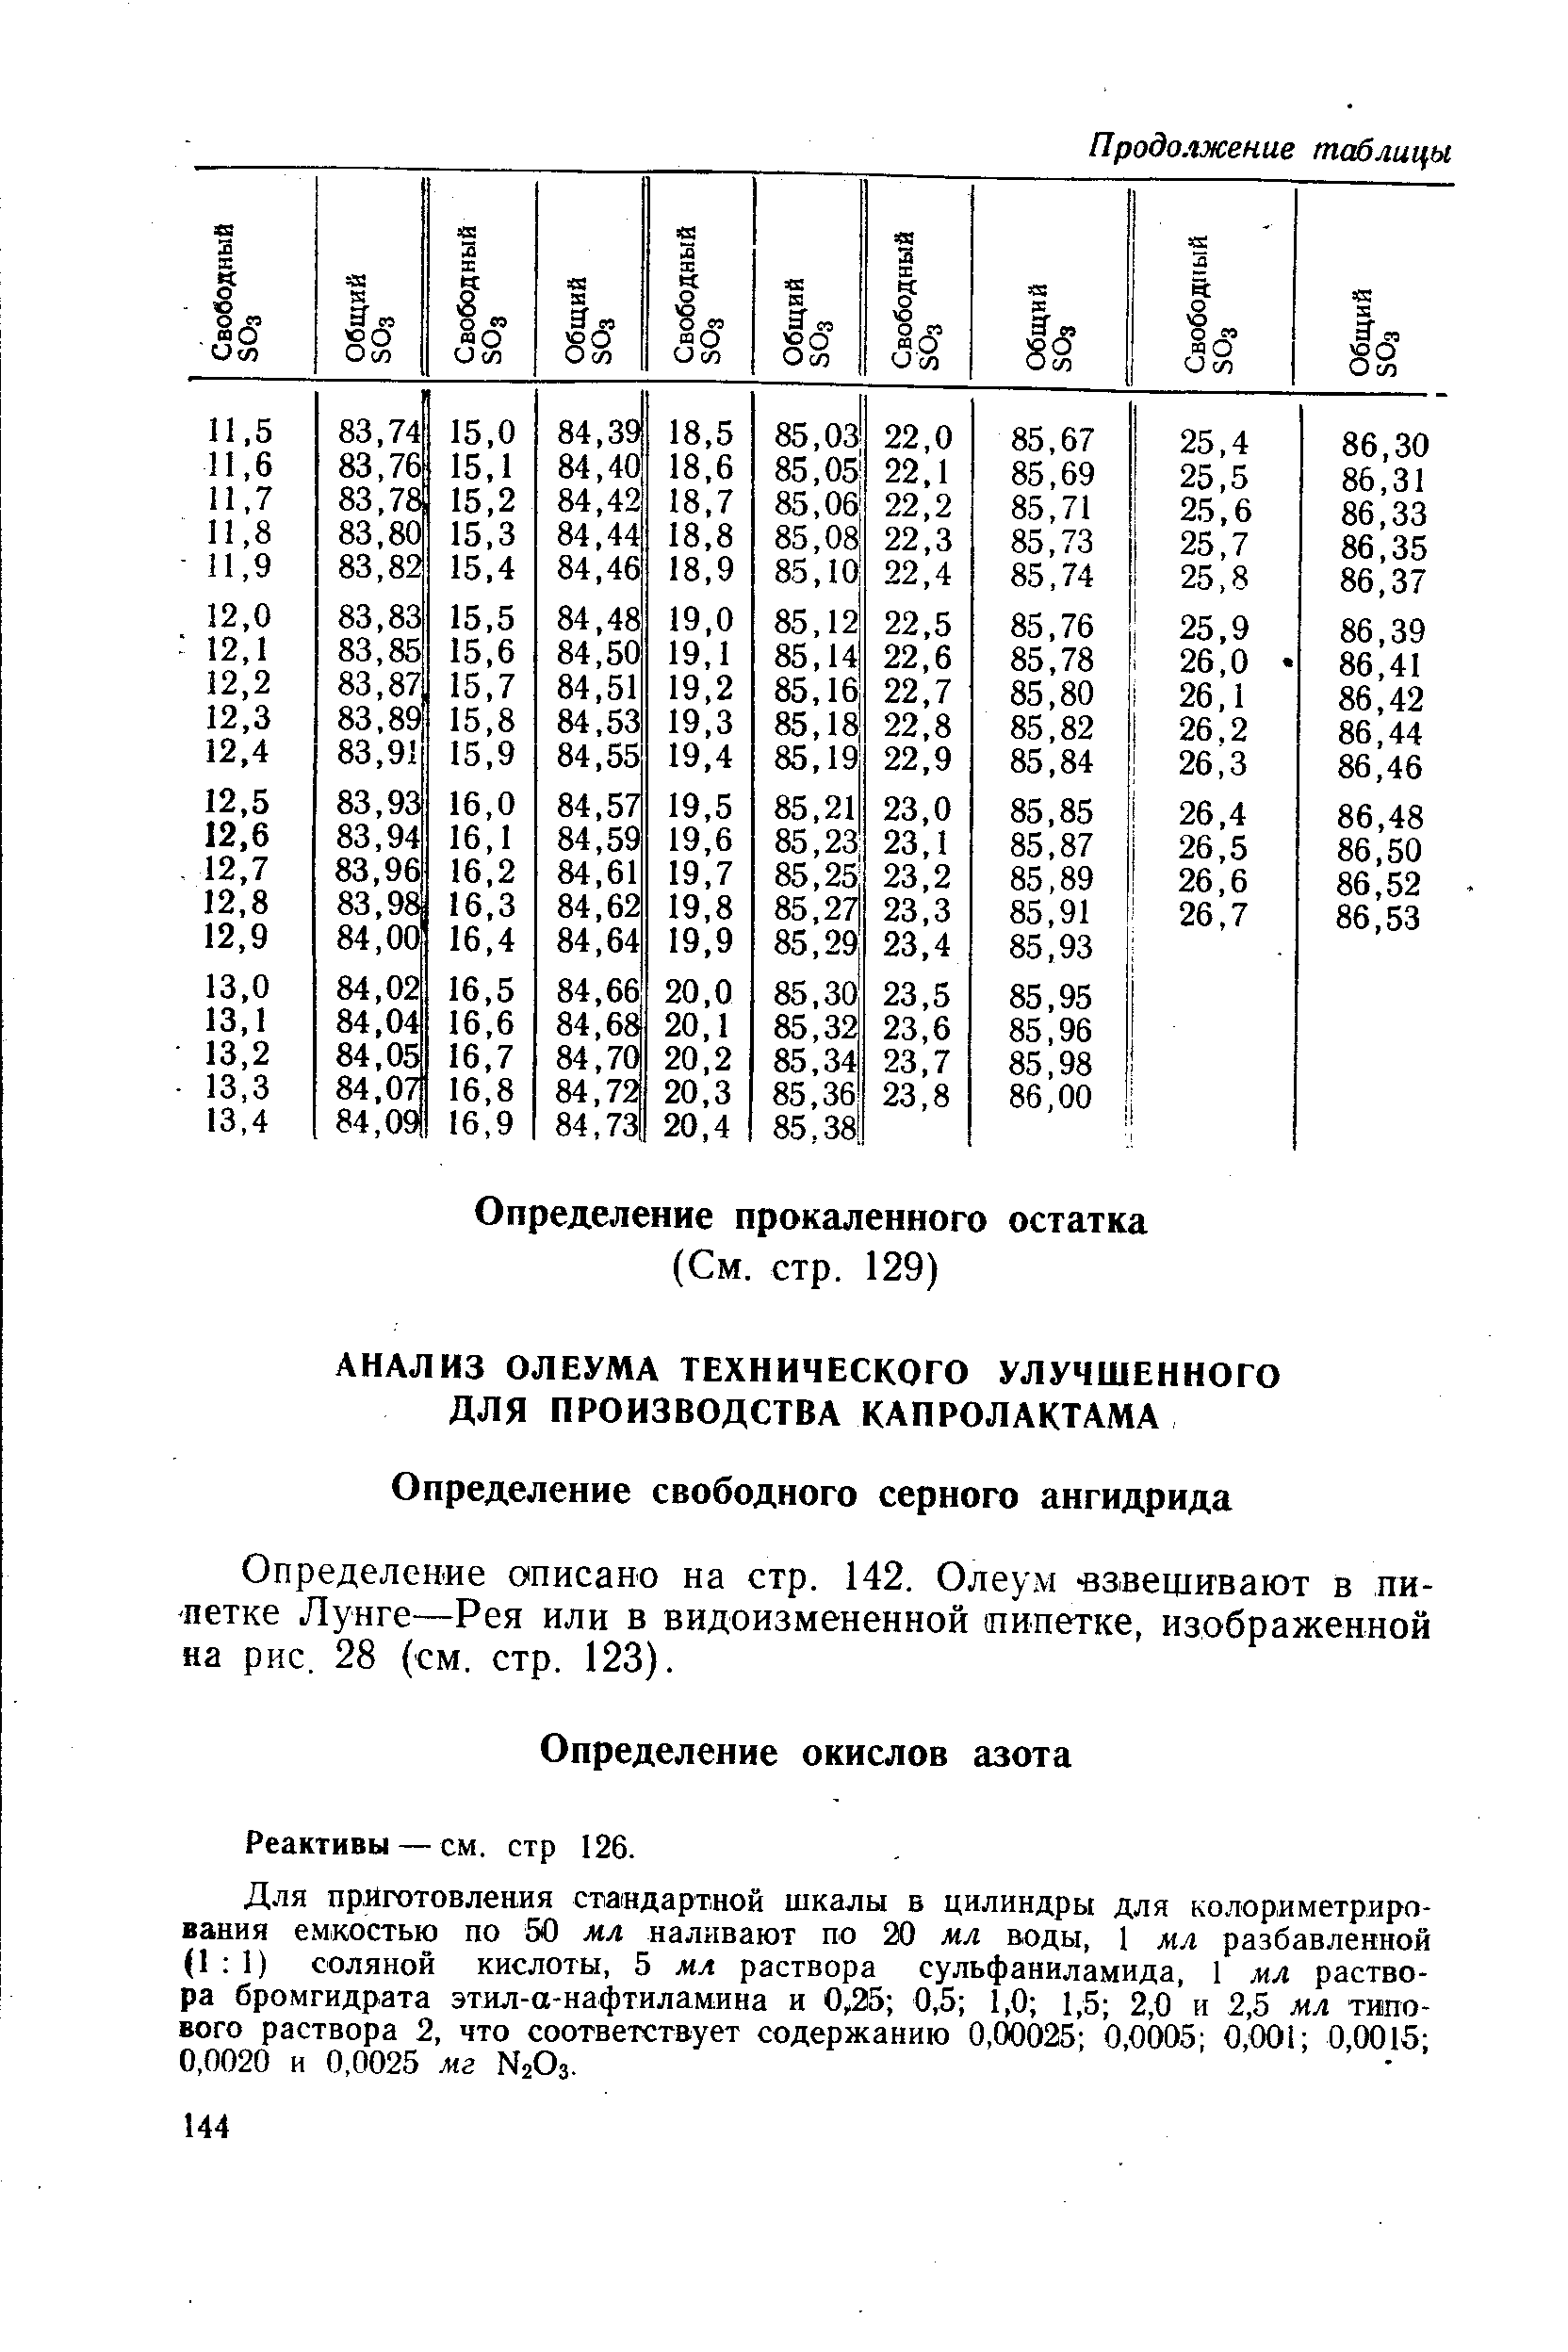 Определение описано на стр. 142. Олеум взвешивают в пипетке Лунге—Рея или в видоизмененной пипетке, изображенной на рис. 28 (см. стр. 123).